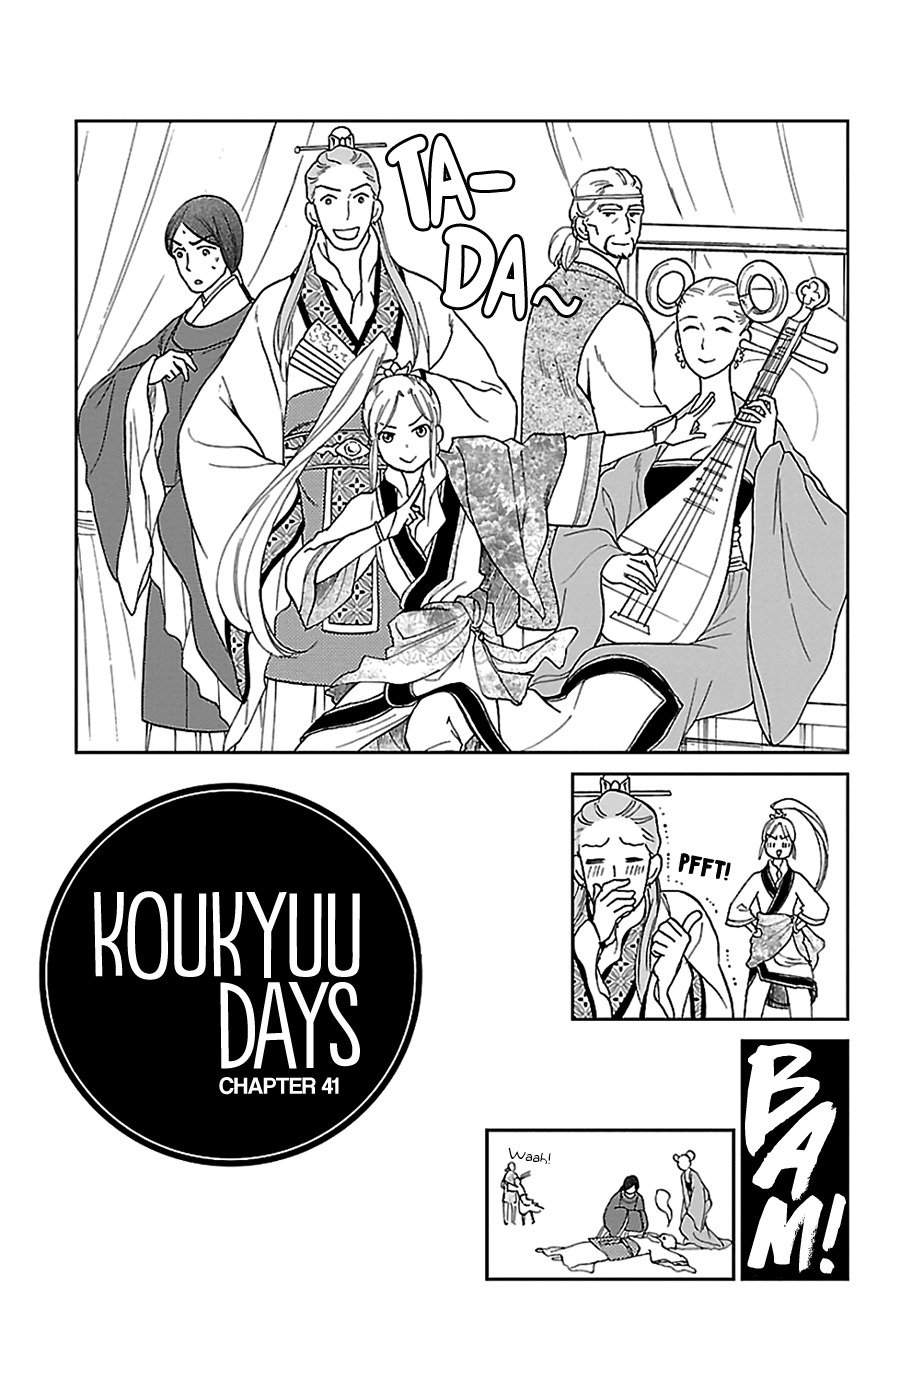 Koukyuu Days - Shichi Kuni Monogatari vol.10 ch.41